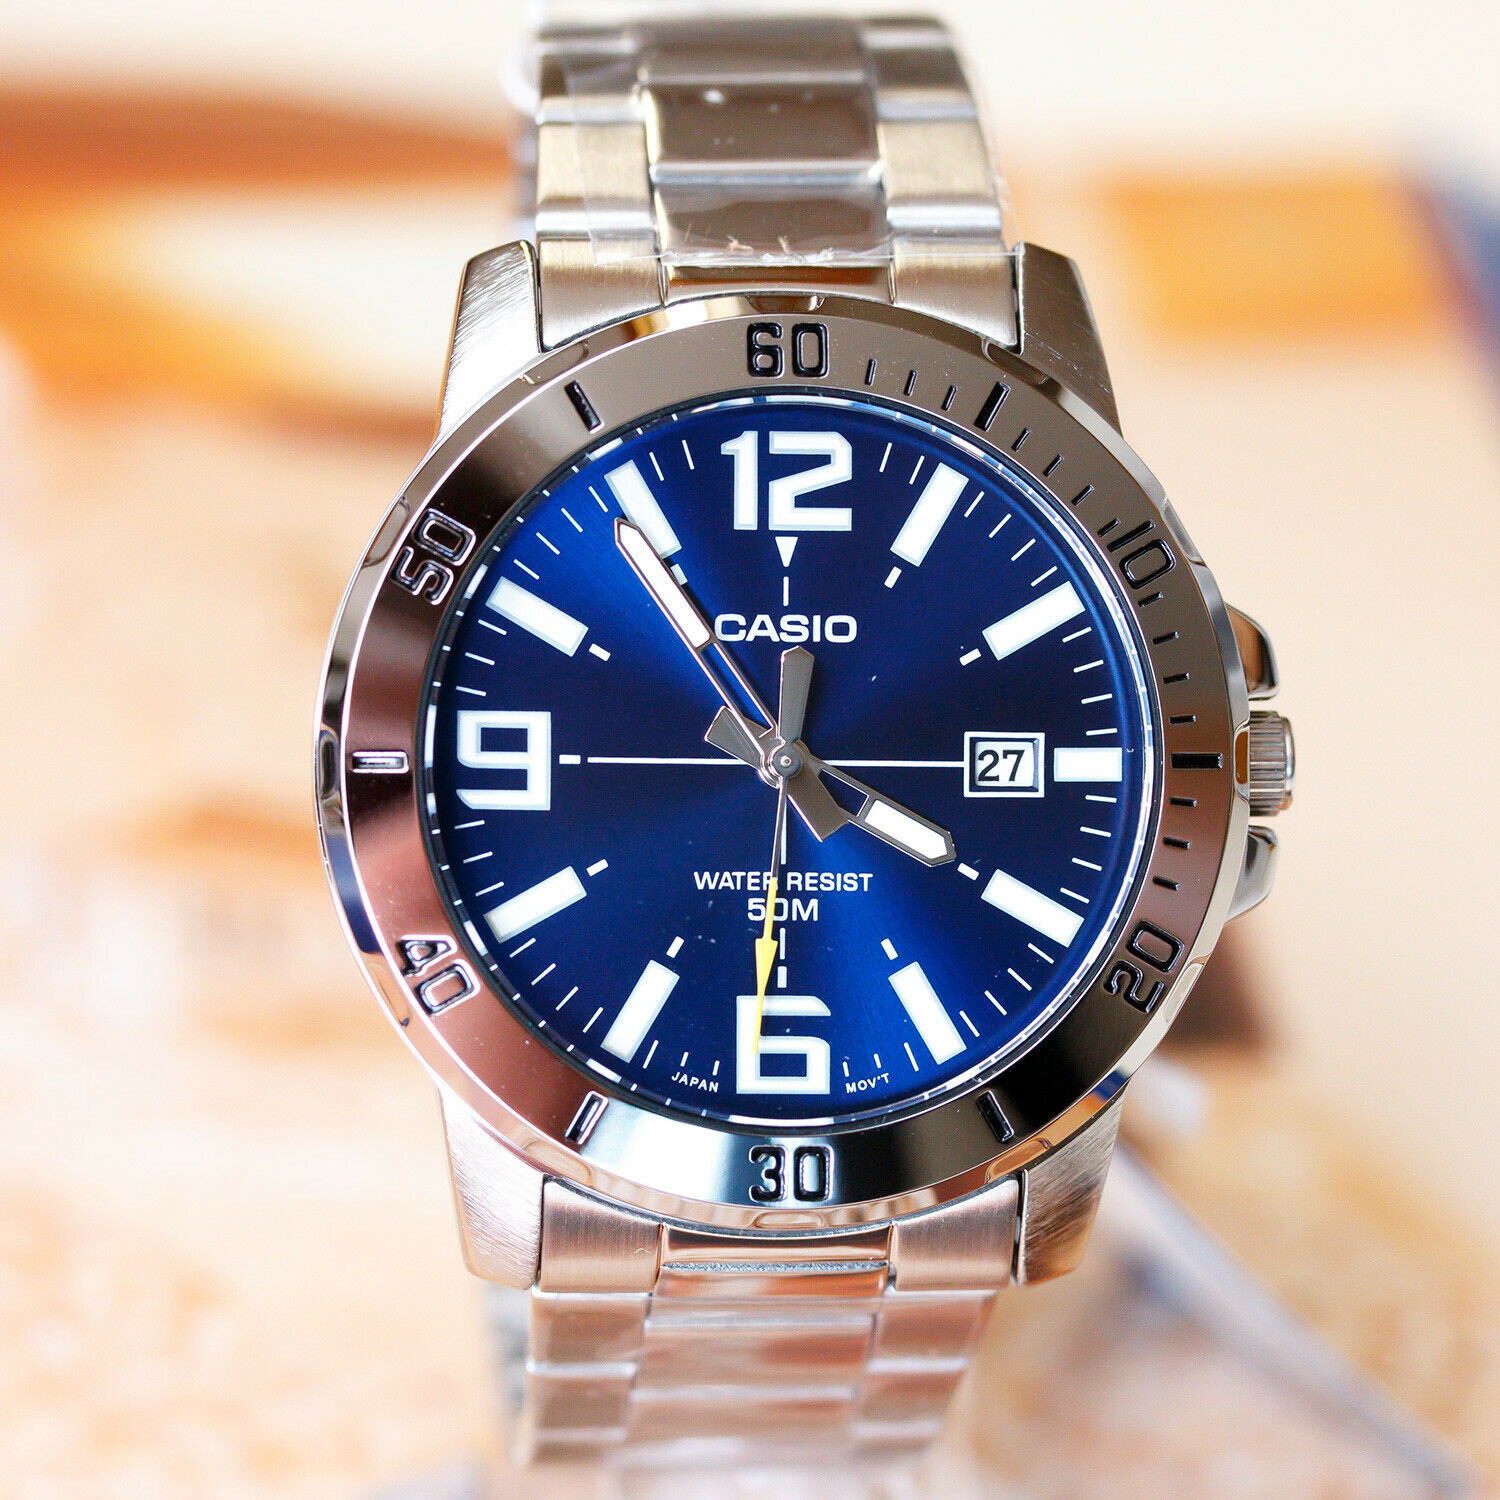 นาฬิกา Casio รุ่น MTP-VD01D-2BV นาฬิกาข้อมือผู้ชายสายแสตนเลส หน้าปัดสีน้ำเงิน - มั่นใจ ของแท้ 100% รับประกันสินค้า 1 ปีเต็ม